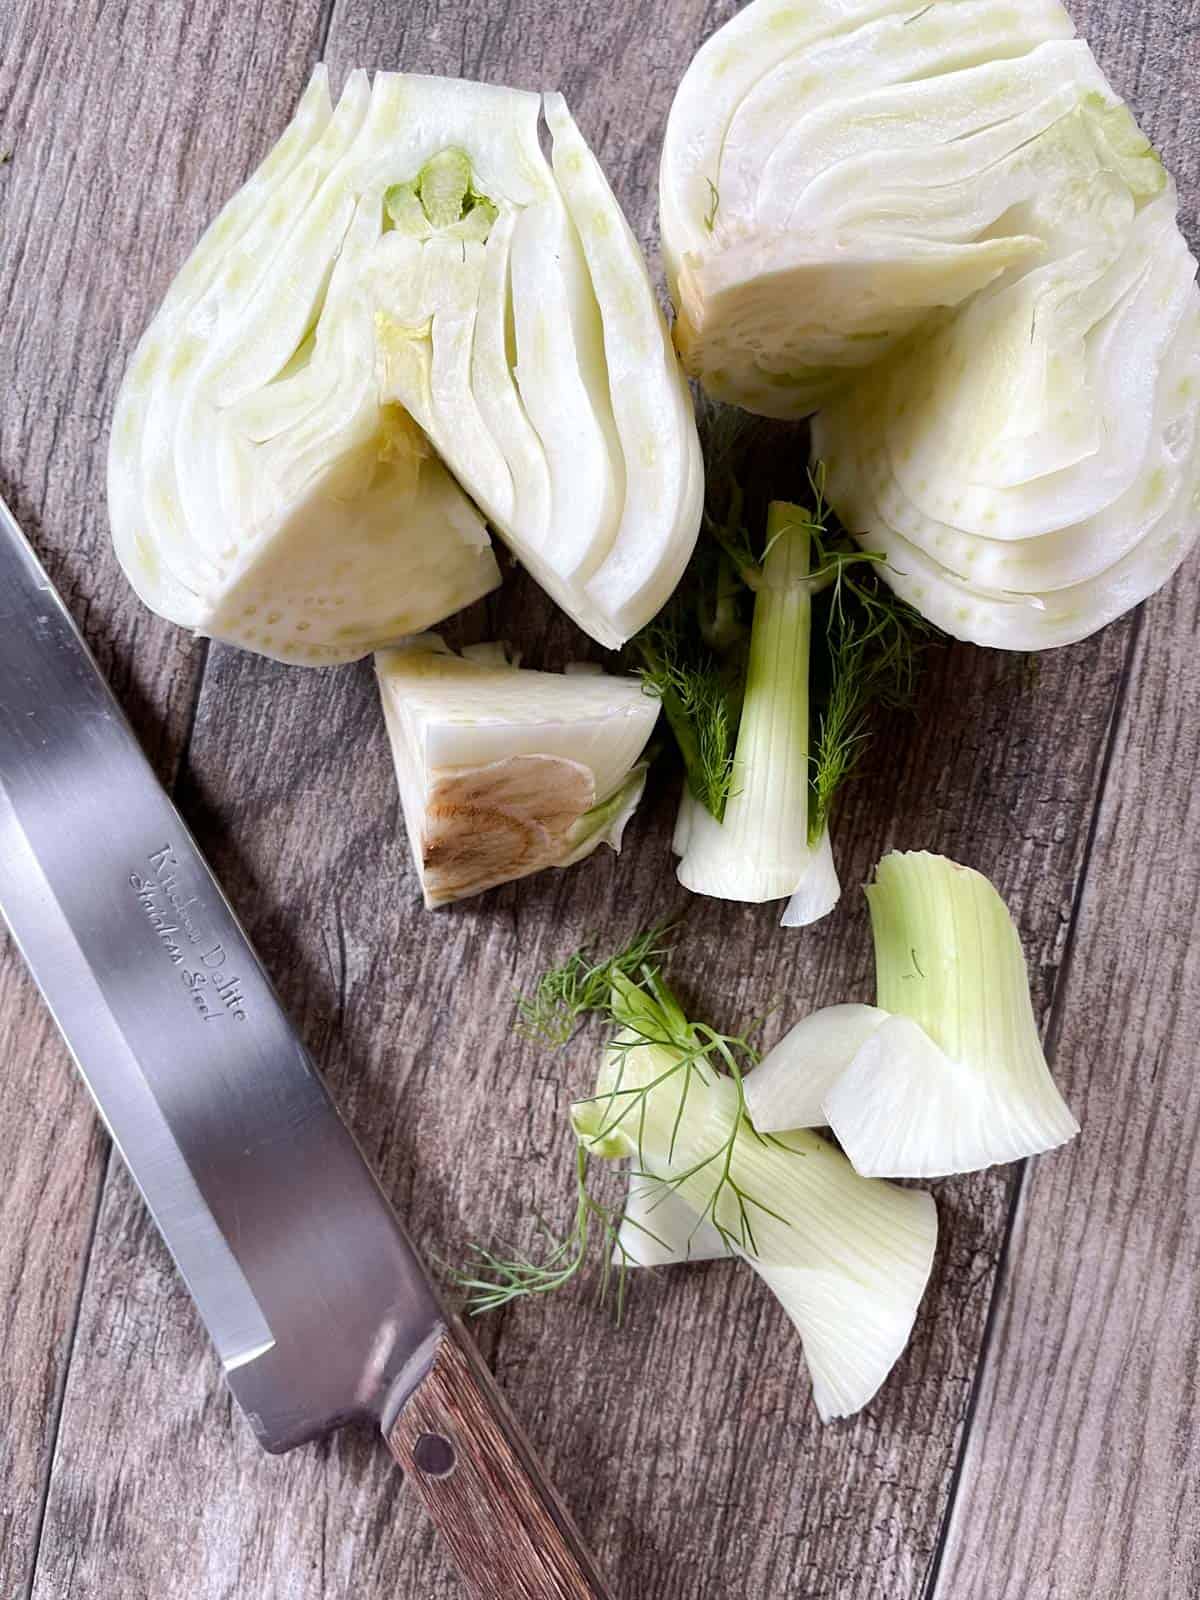 Prepared cut fennel bulb on a cutting board with a knife.